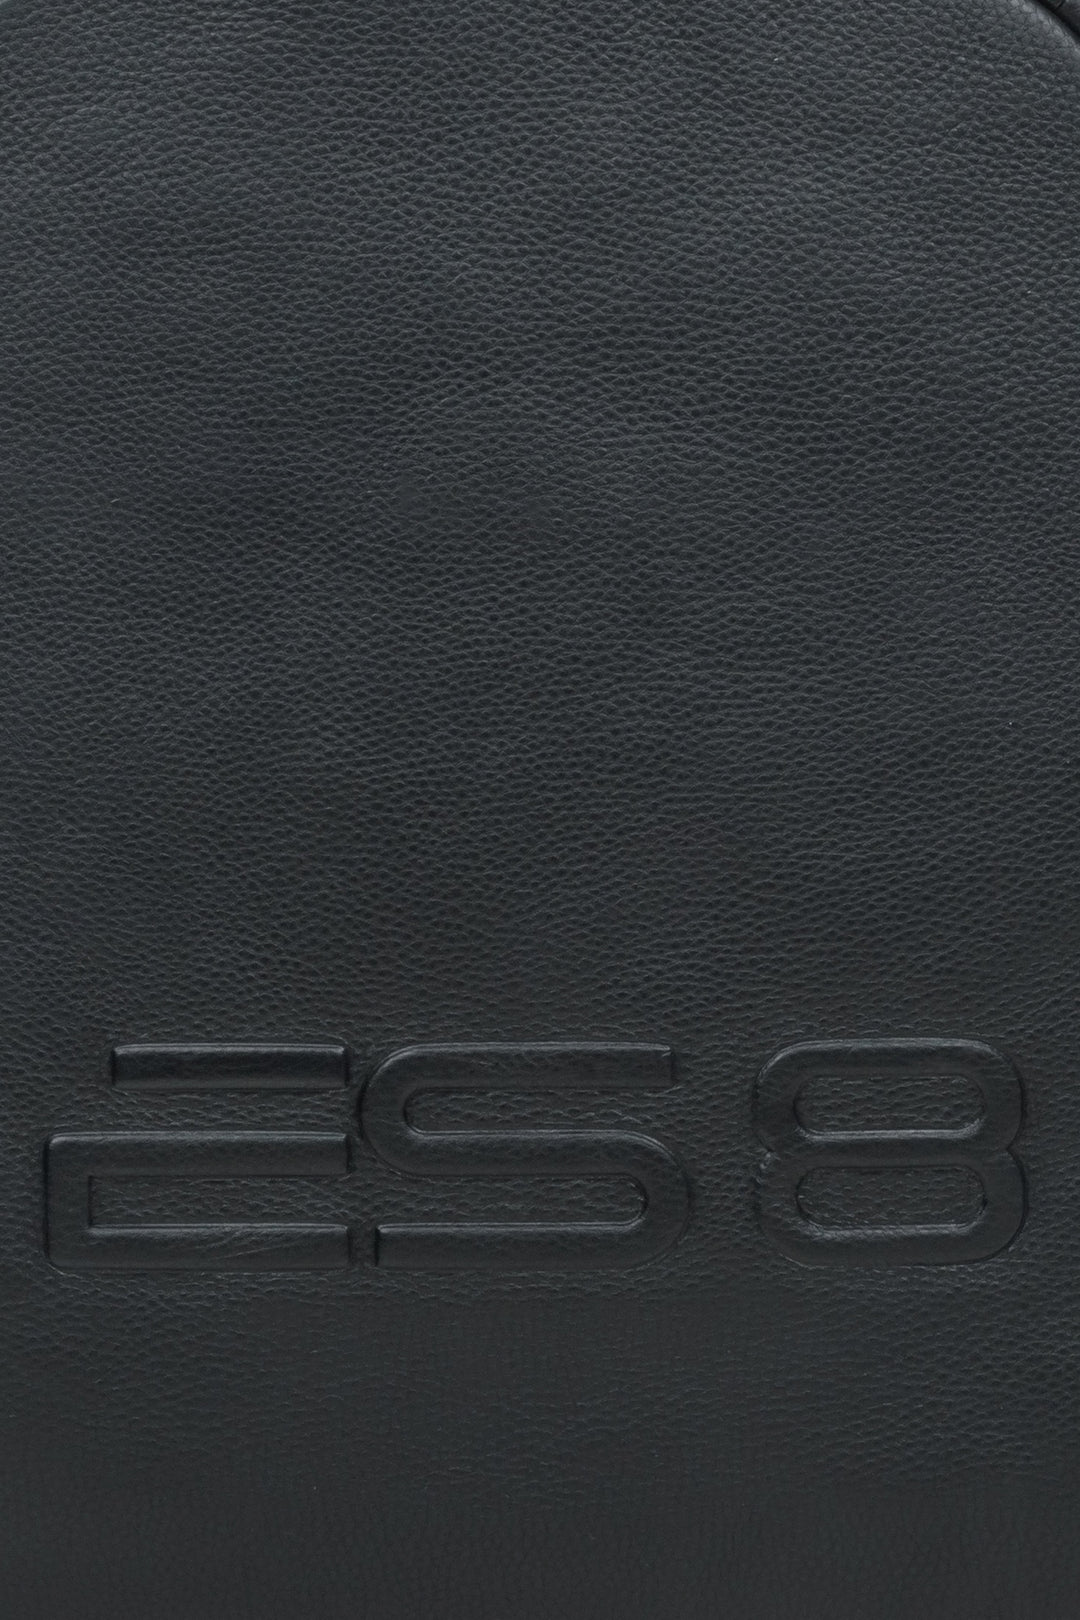 Leather black urban men's backpack ES8 - close-up on details